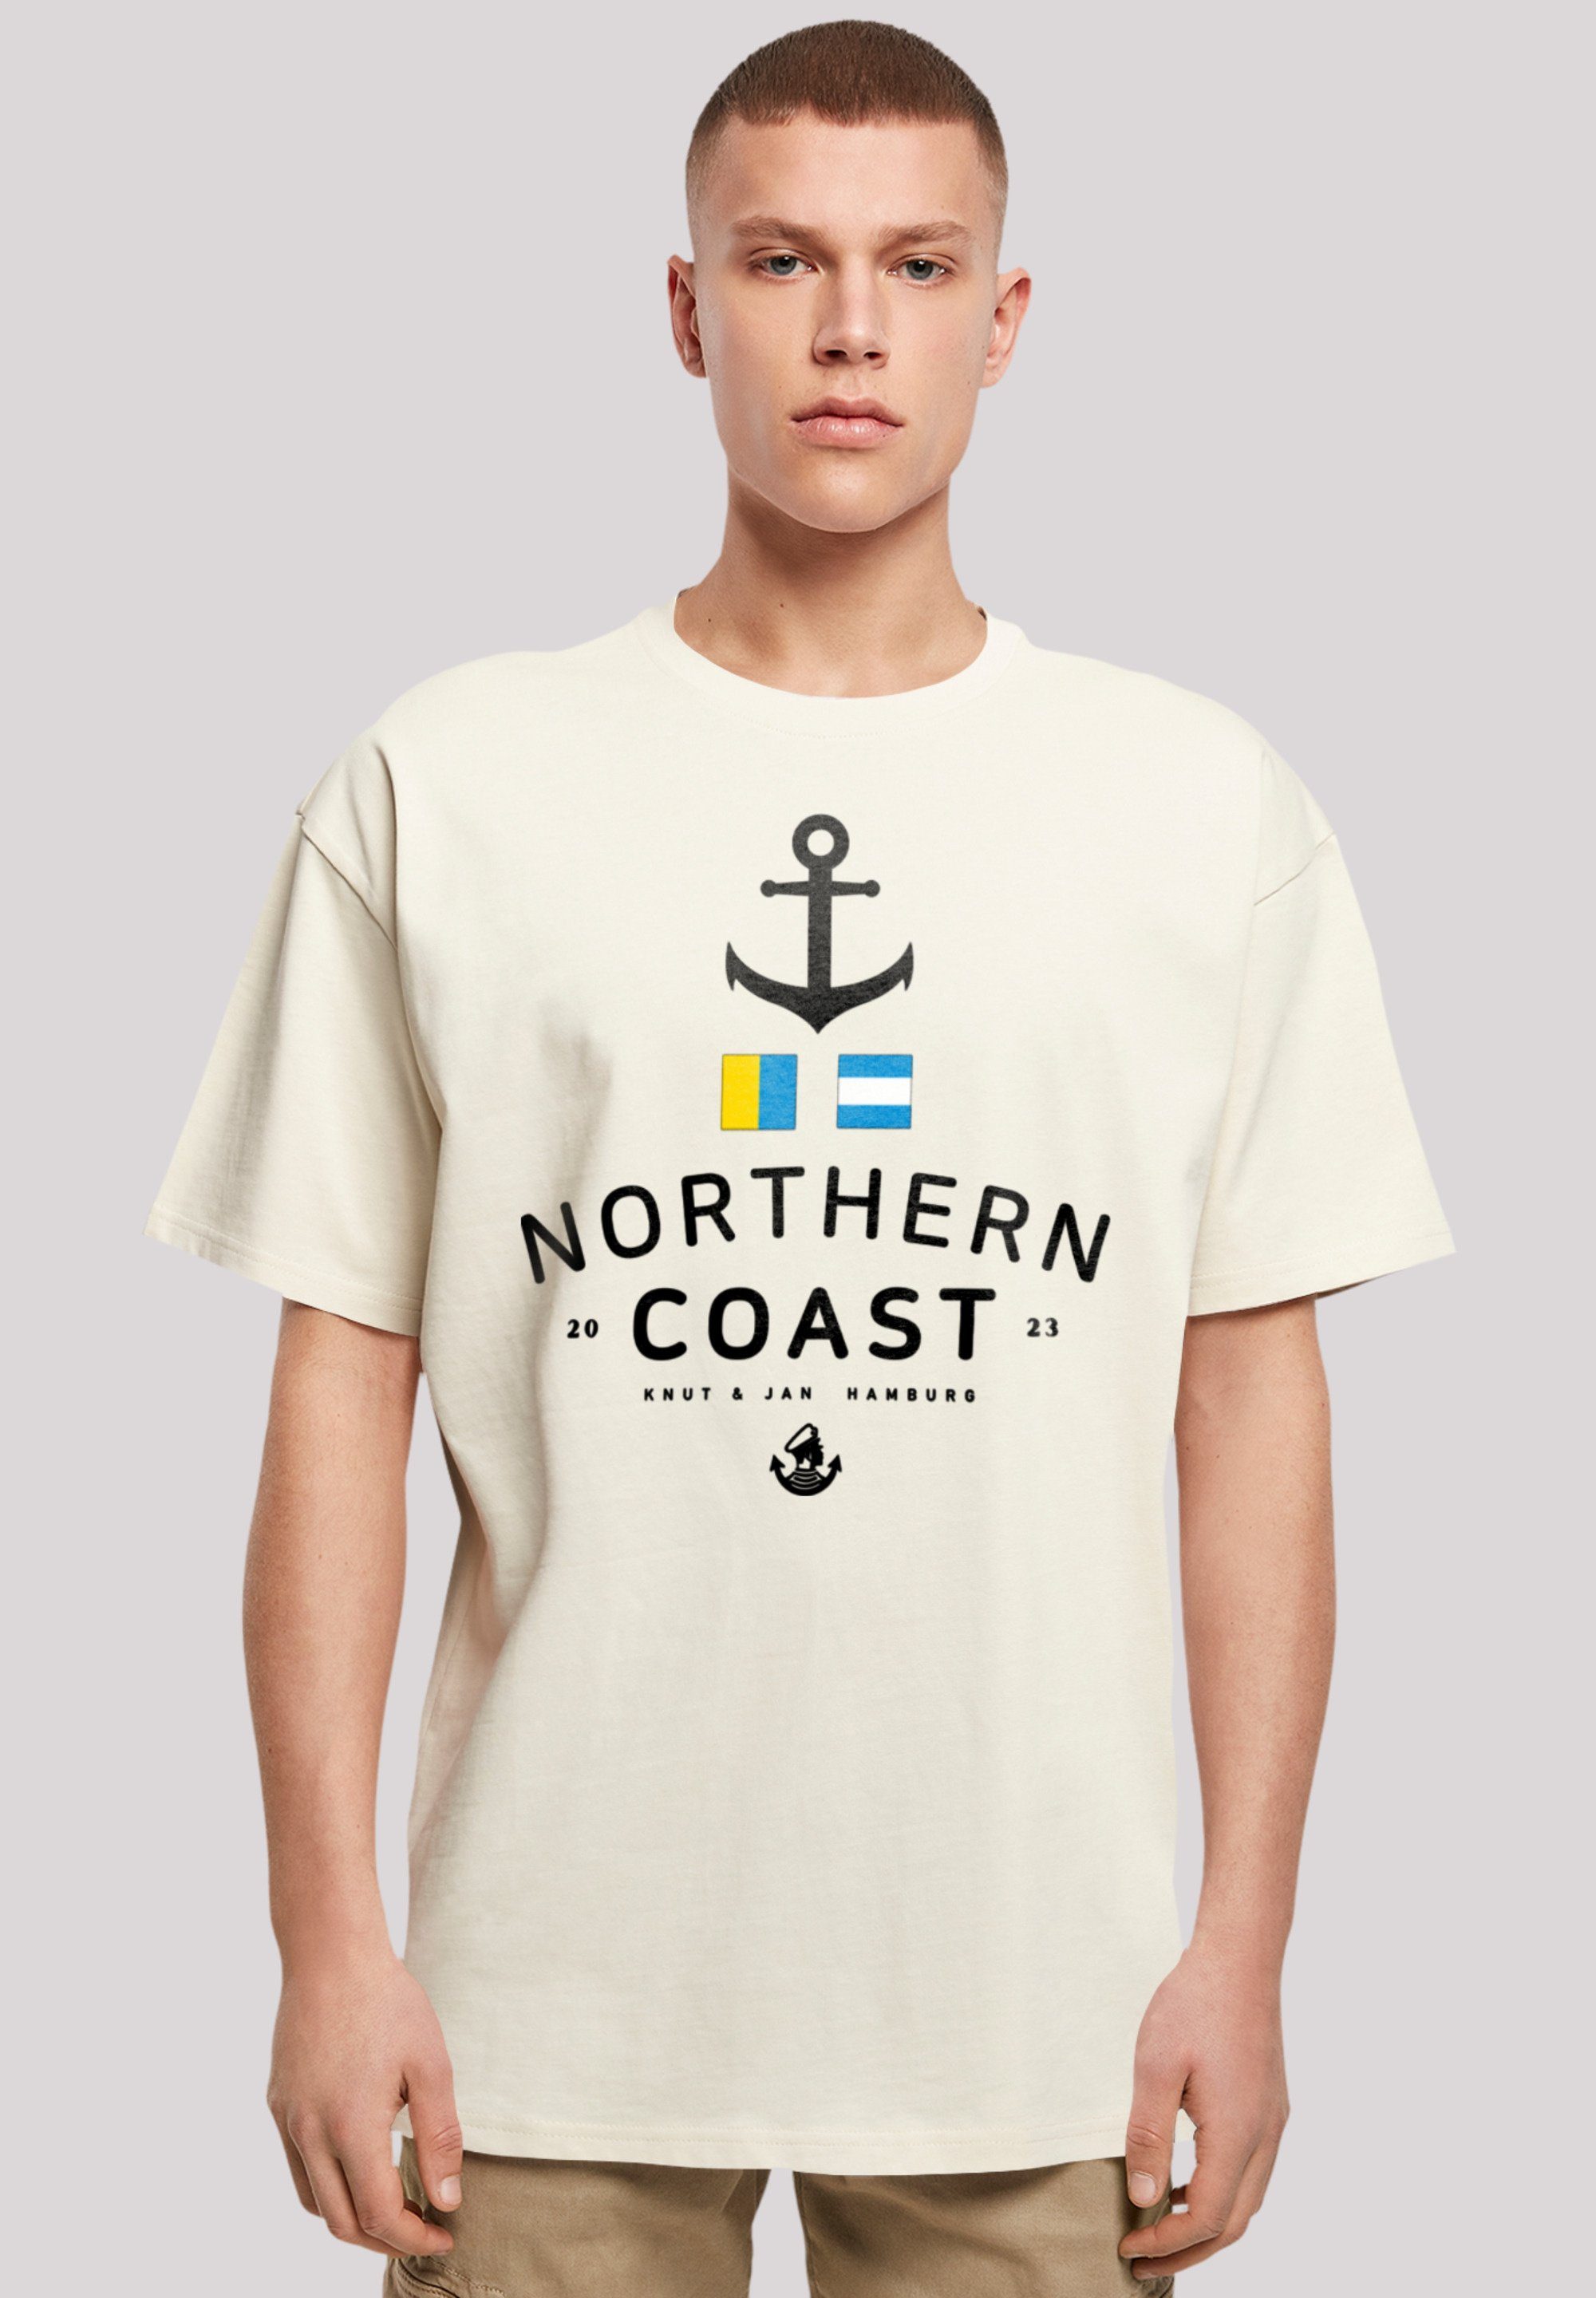 Hamburg sand Nordsee & Print Coast Knut Nordic F4NT4STIC T-Shirt Jan